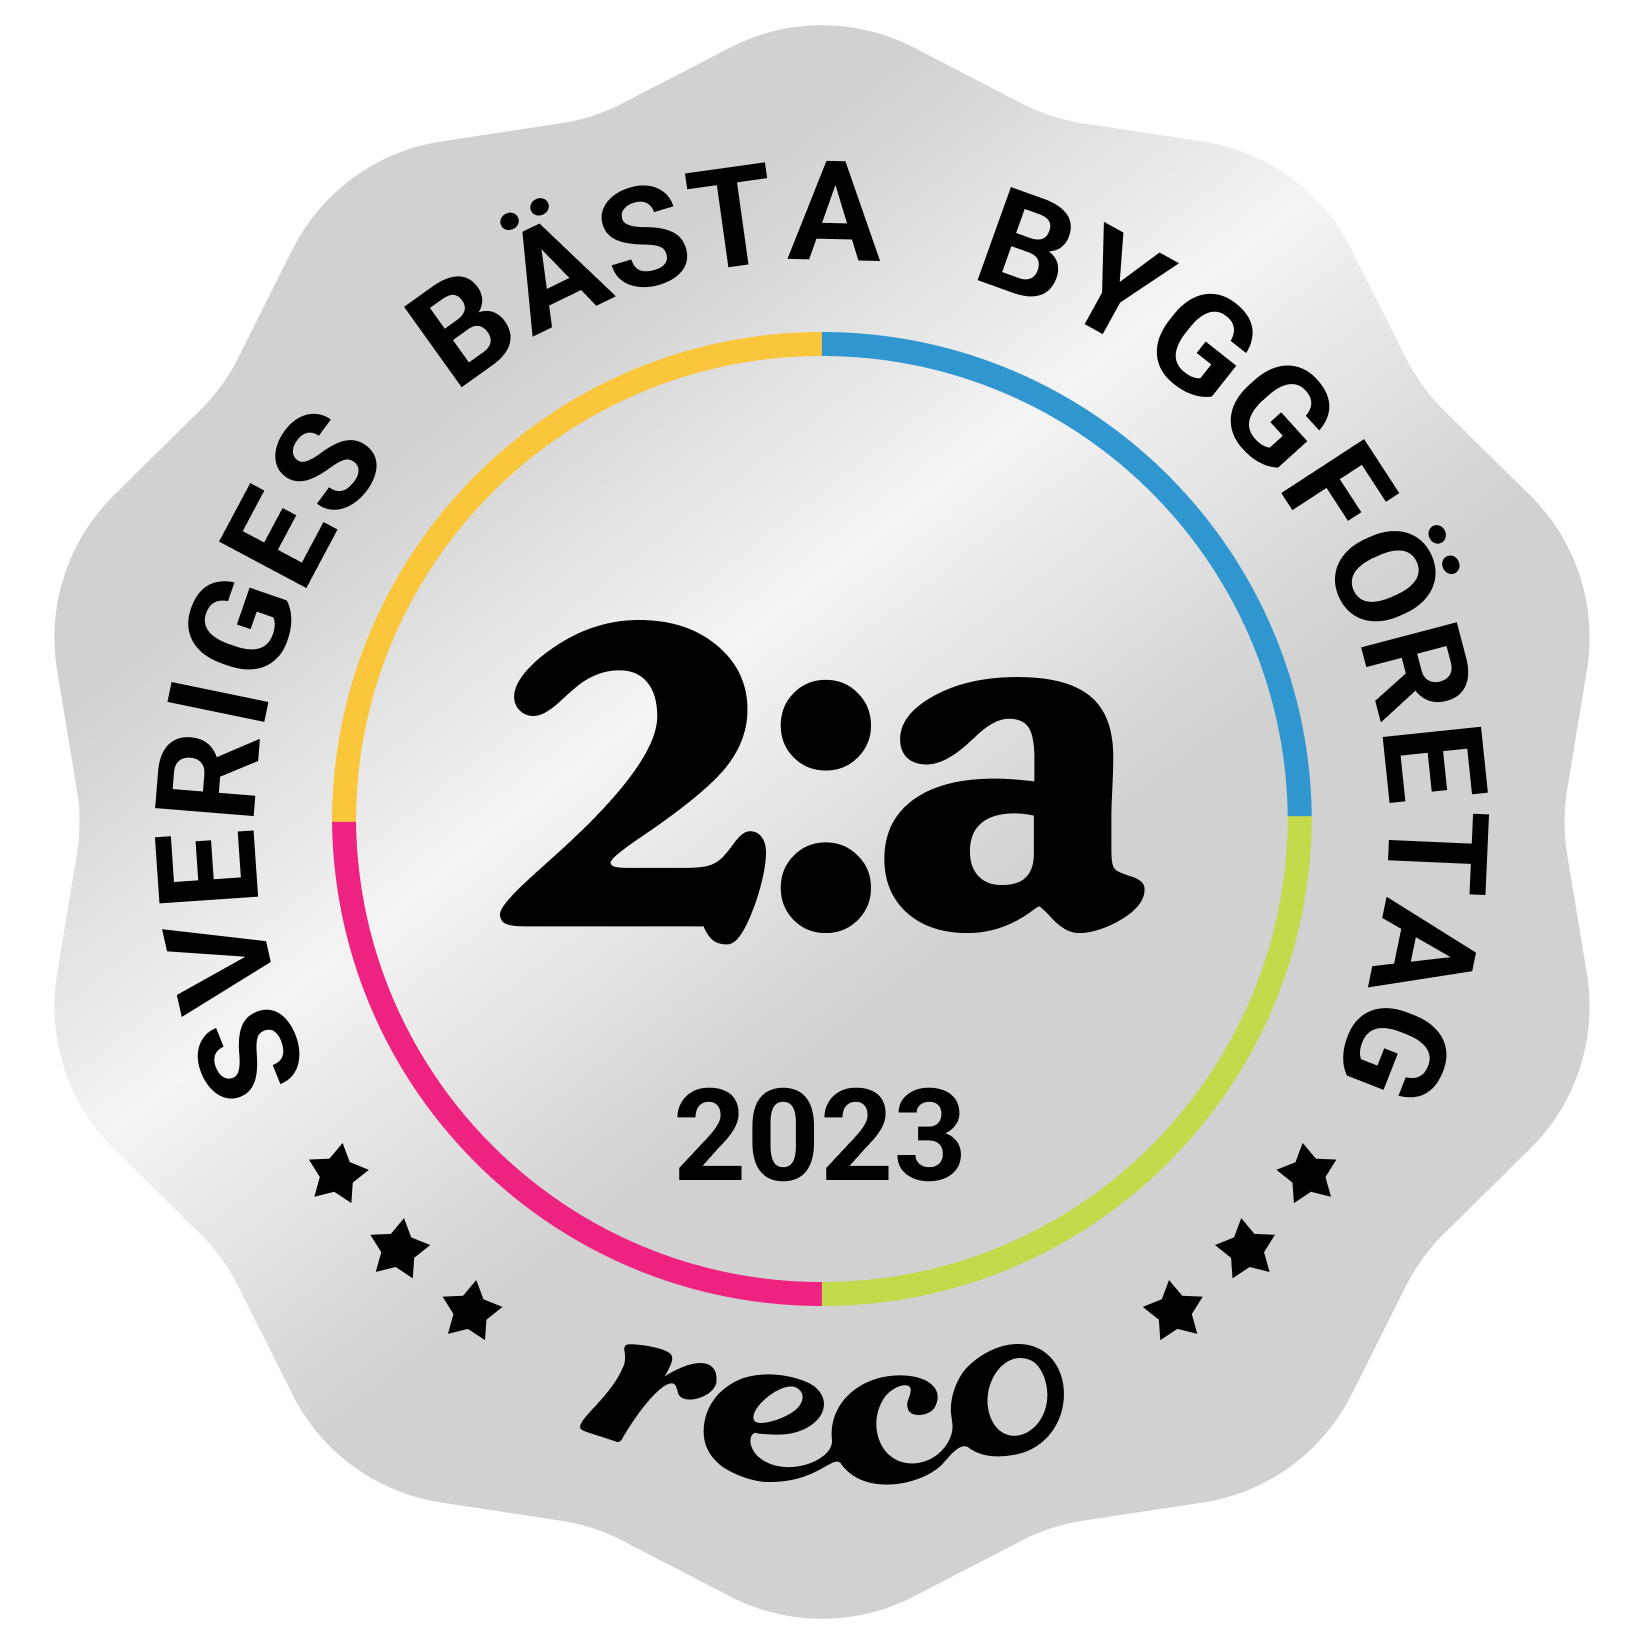 Bagde - Best in Sweden - Byggfirma - Second@2x